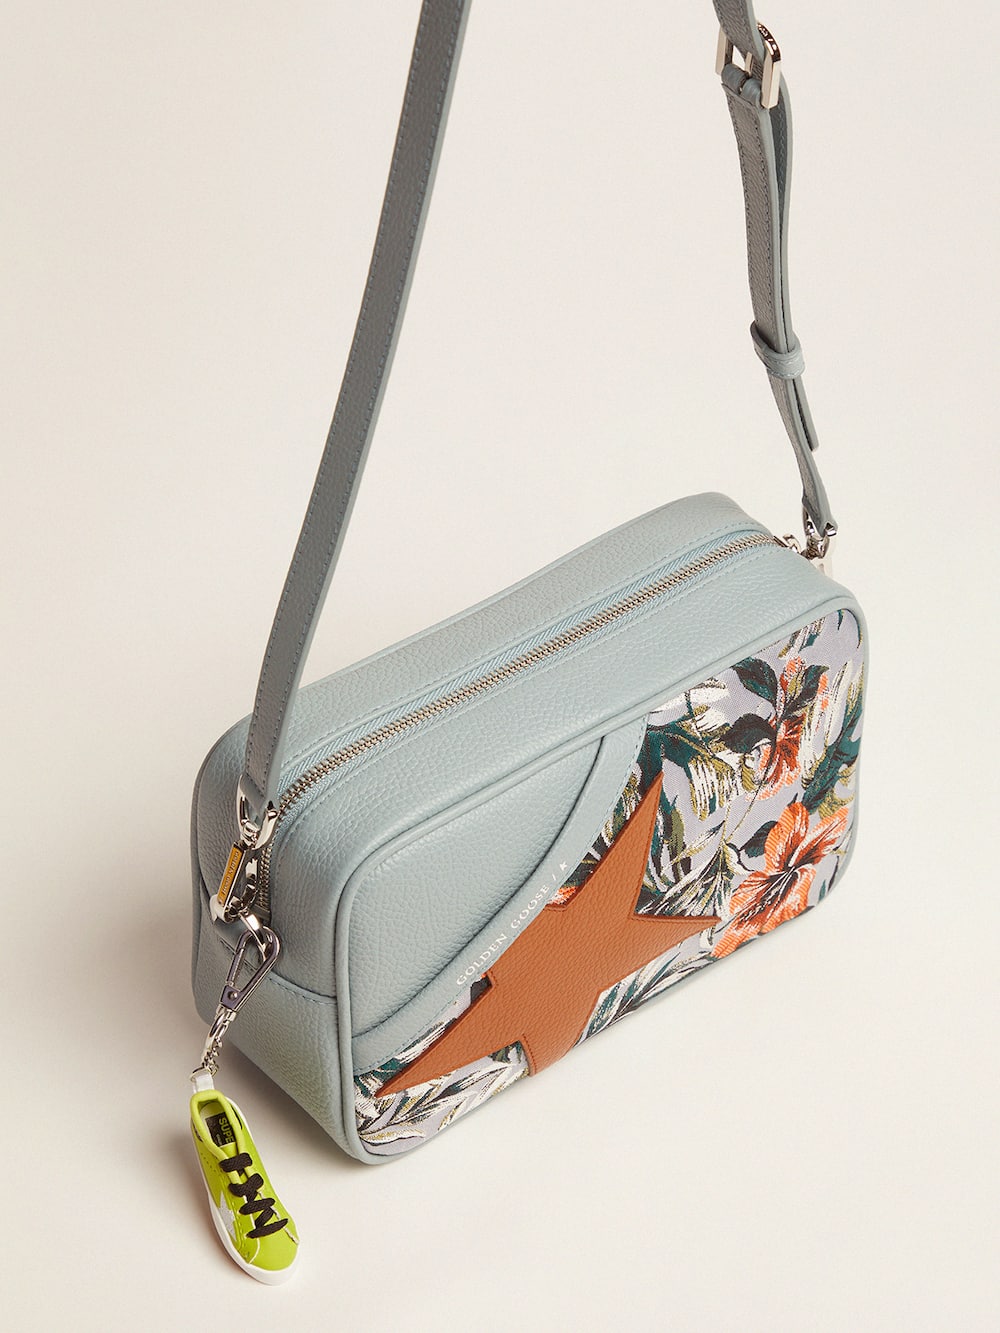 Golden Goose - Tasche Star Bag im Farbton Celadon aus gewalktem Leder mit Jacquard-Print und karamellfarbenem Stern in 